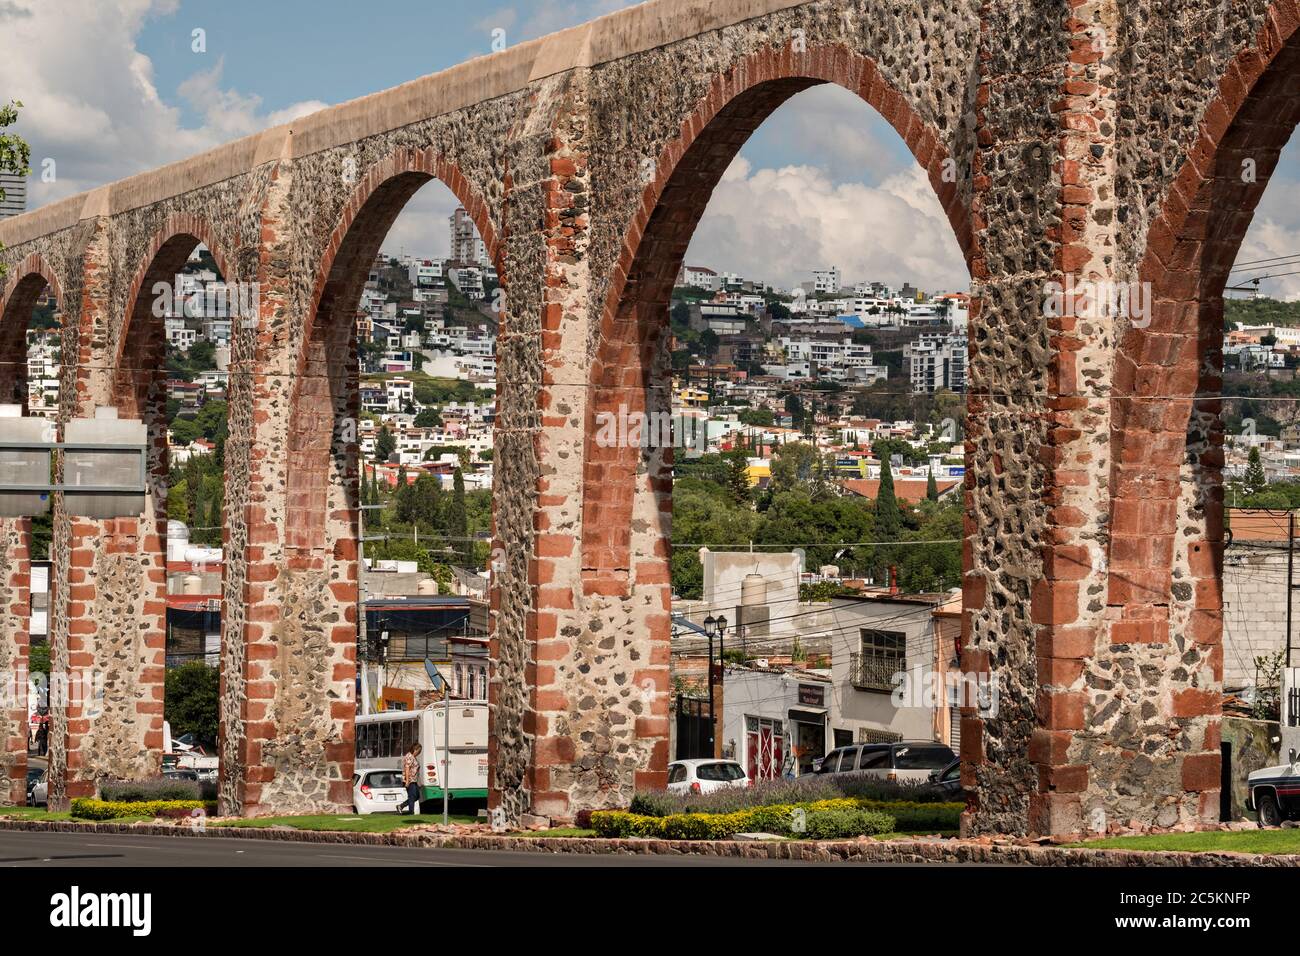 L'antico acquedotto di pietra di Queretaro nella vecchia sezione coloniale di Santiago de Queretaro, Stato del Queretaro, Messico. L'acquedotto è stato completato nel 1735 ed è il più grande del Messico. Foto Stock